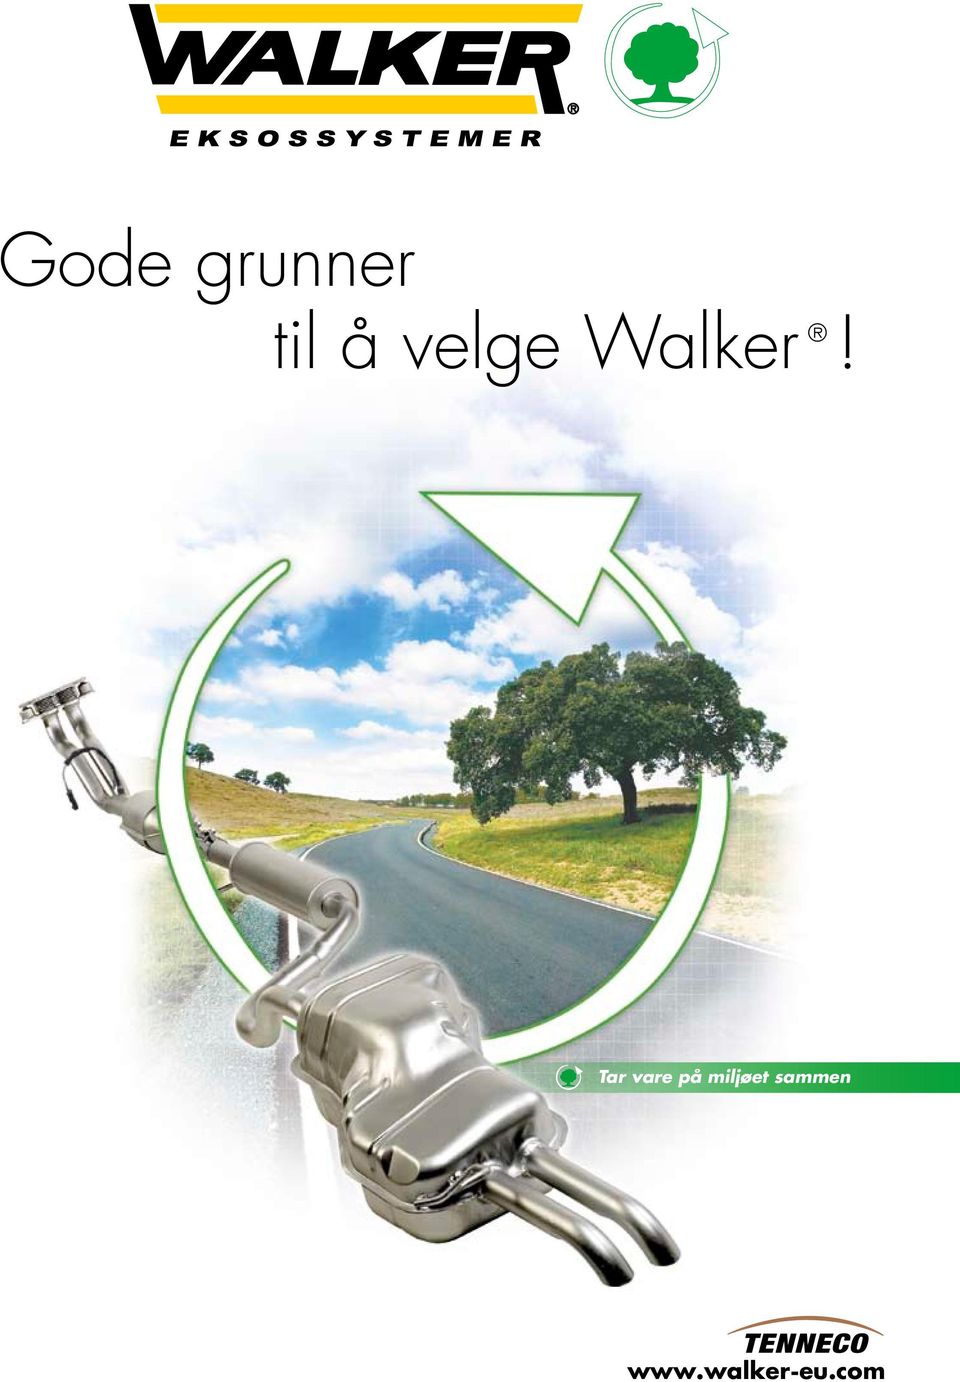 Walker! www.